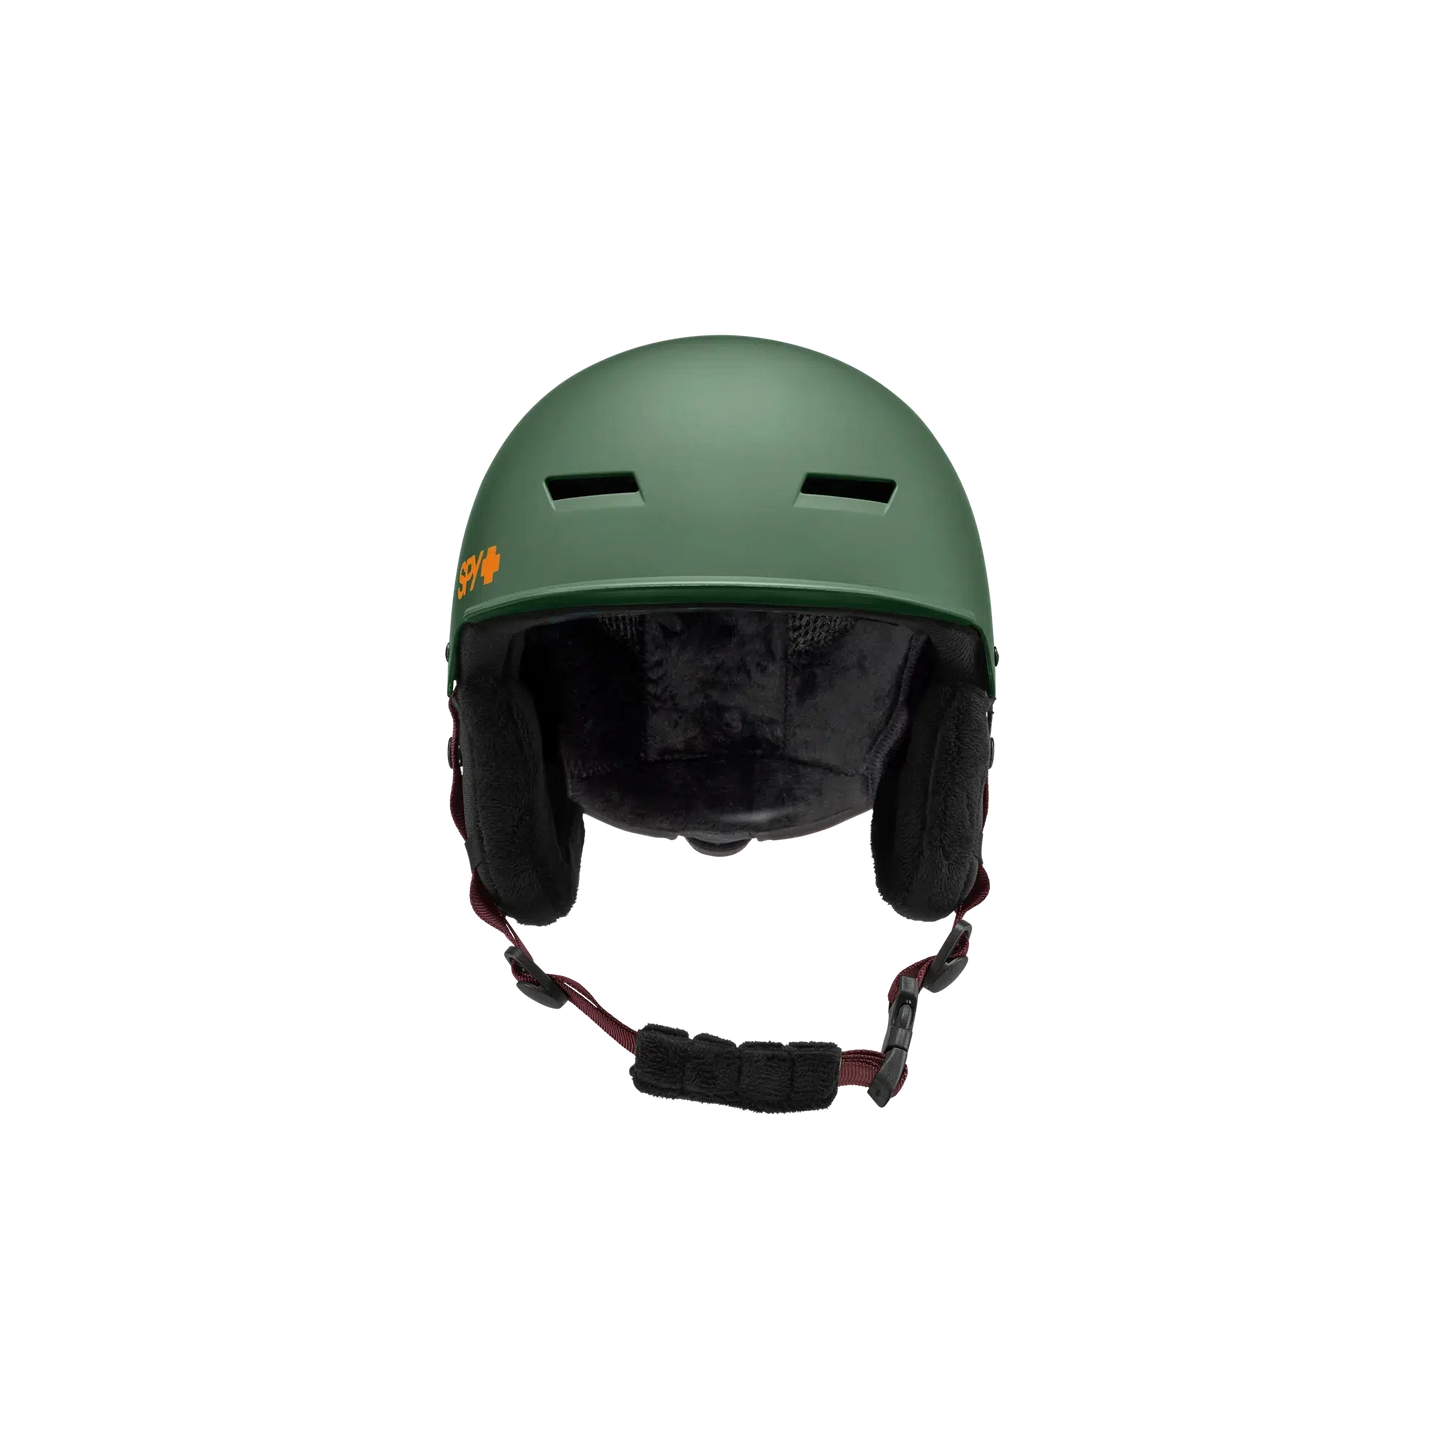 SPY Galactic MIPS Helmet